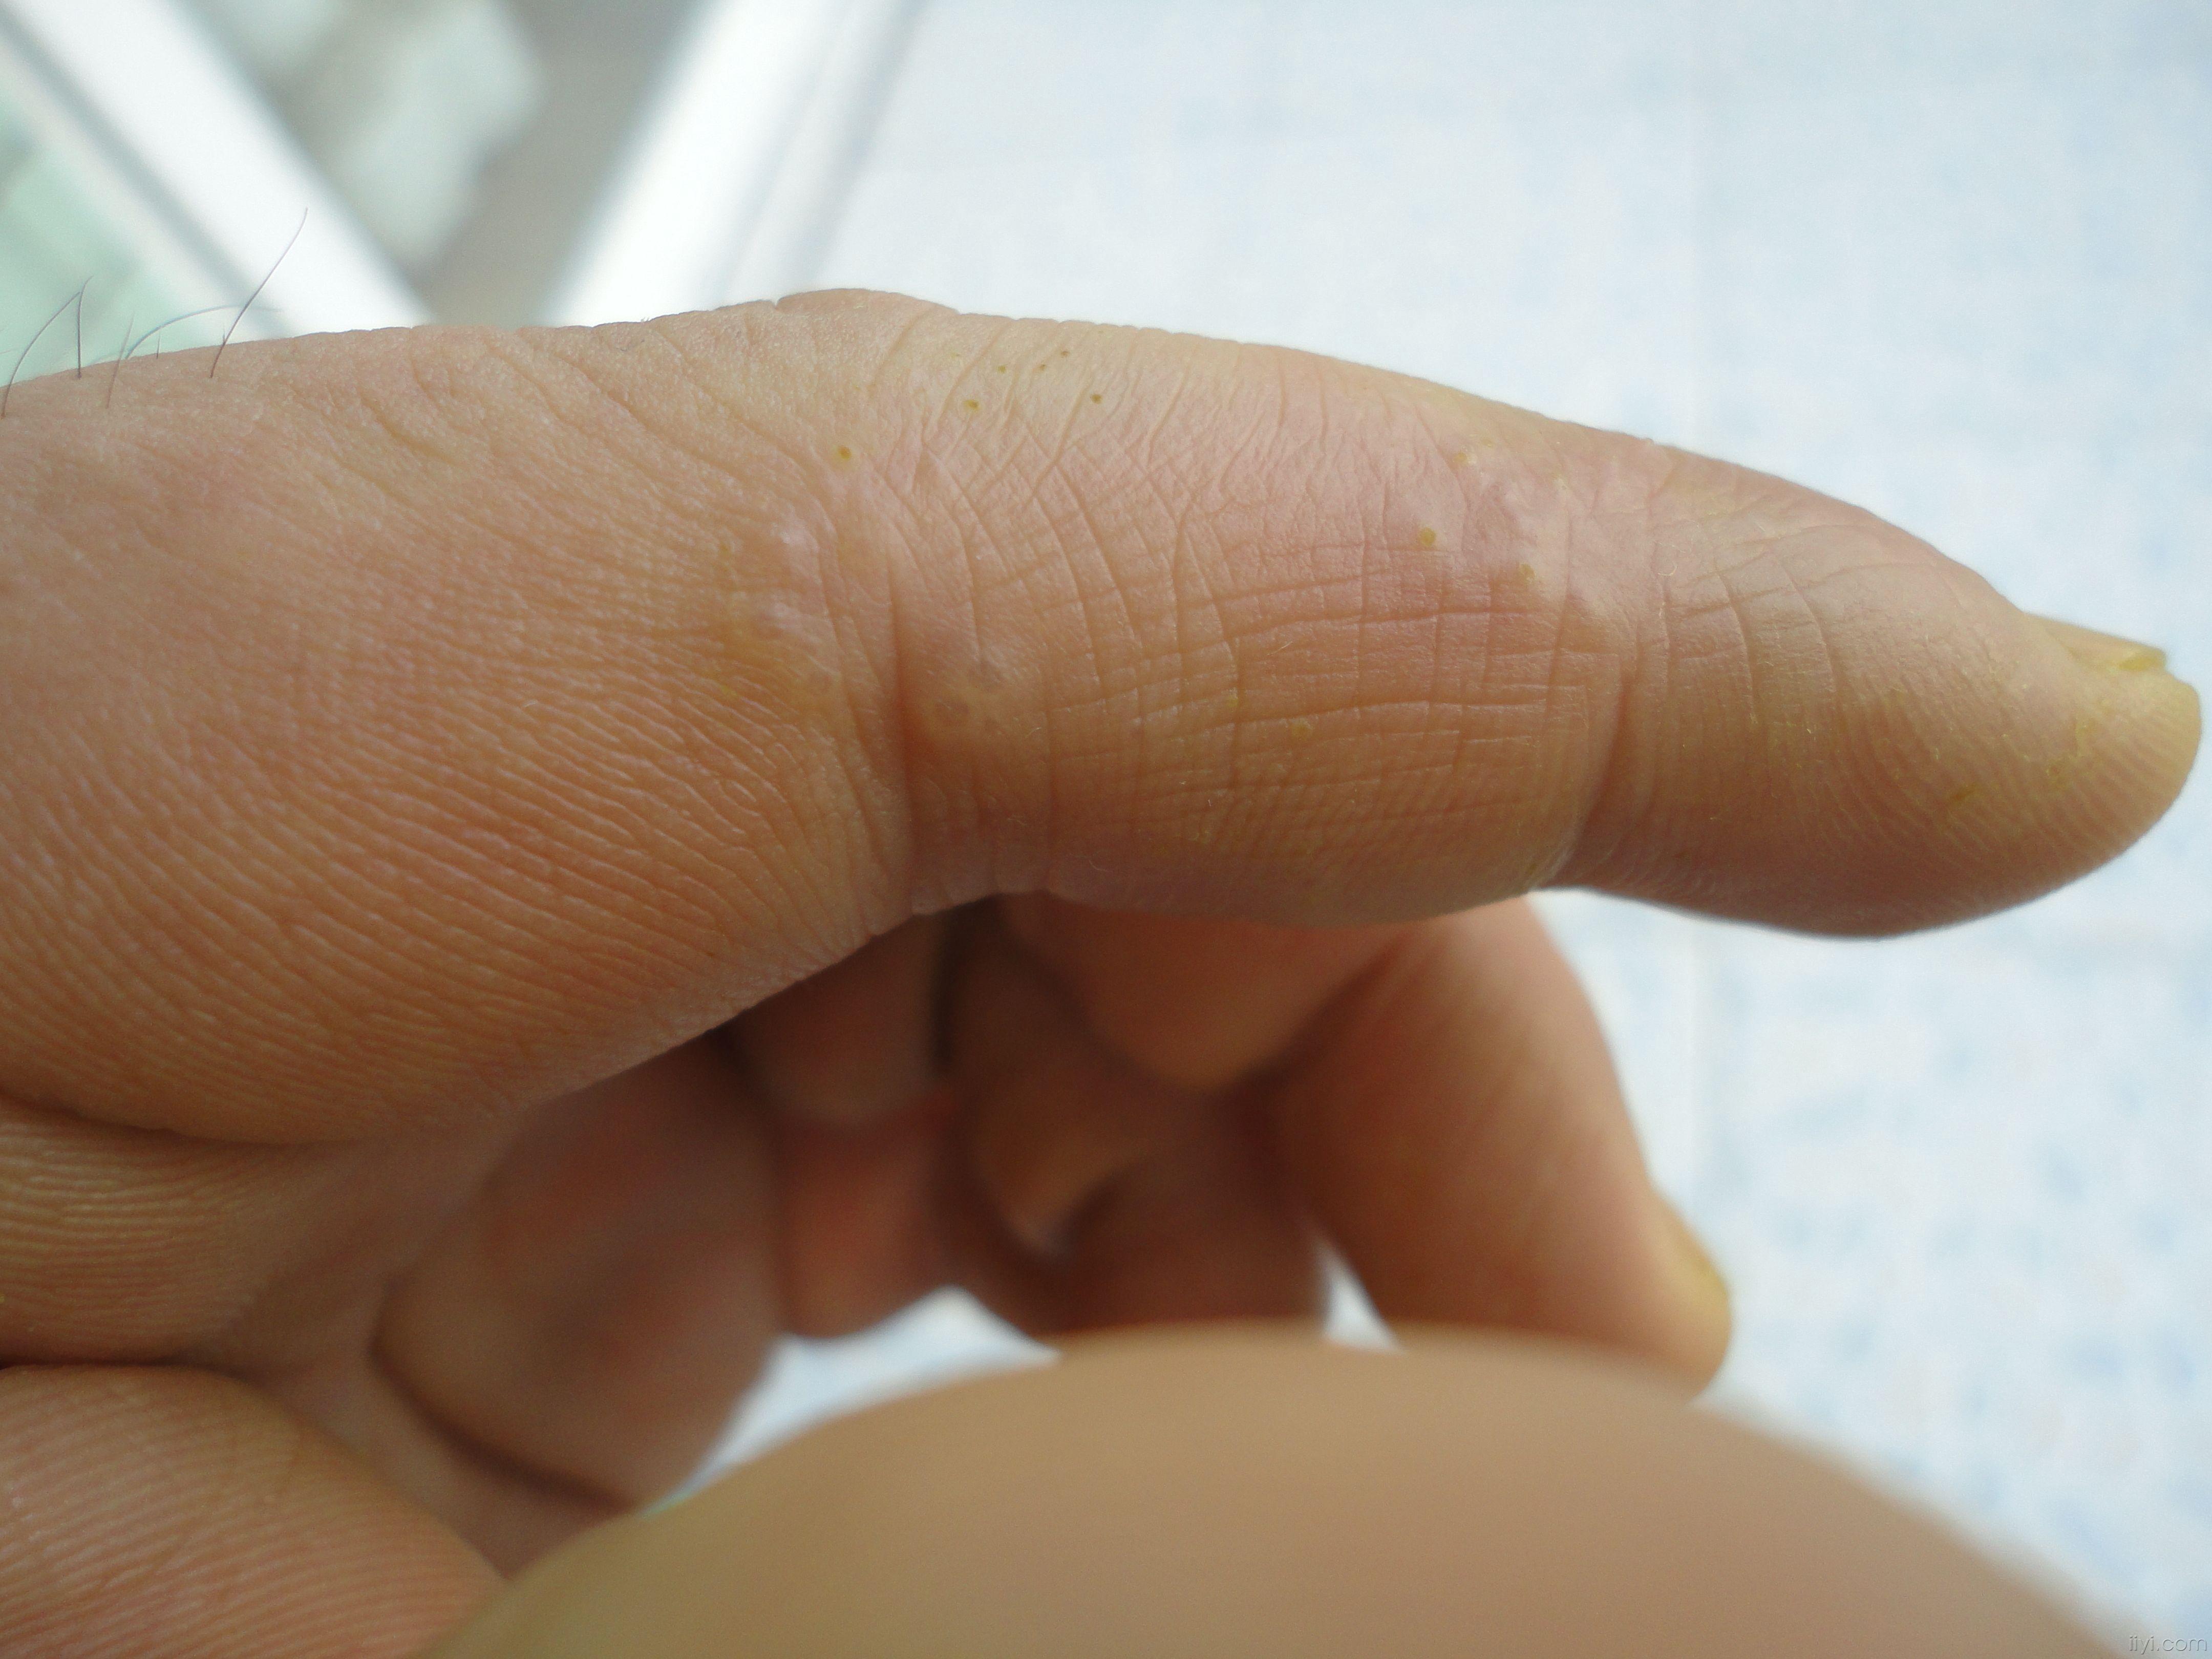 指尖角化性湿疹图片